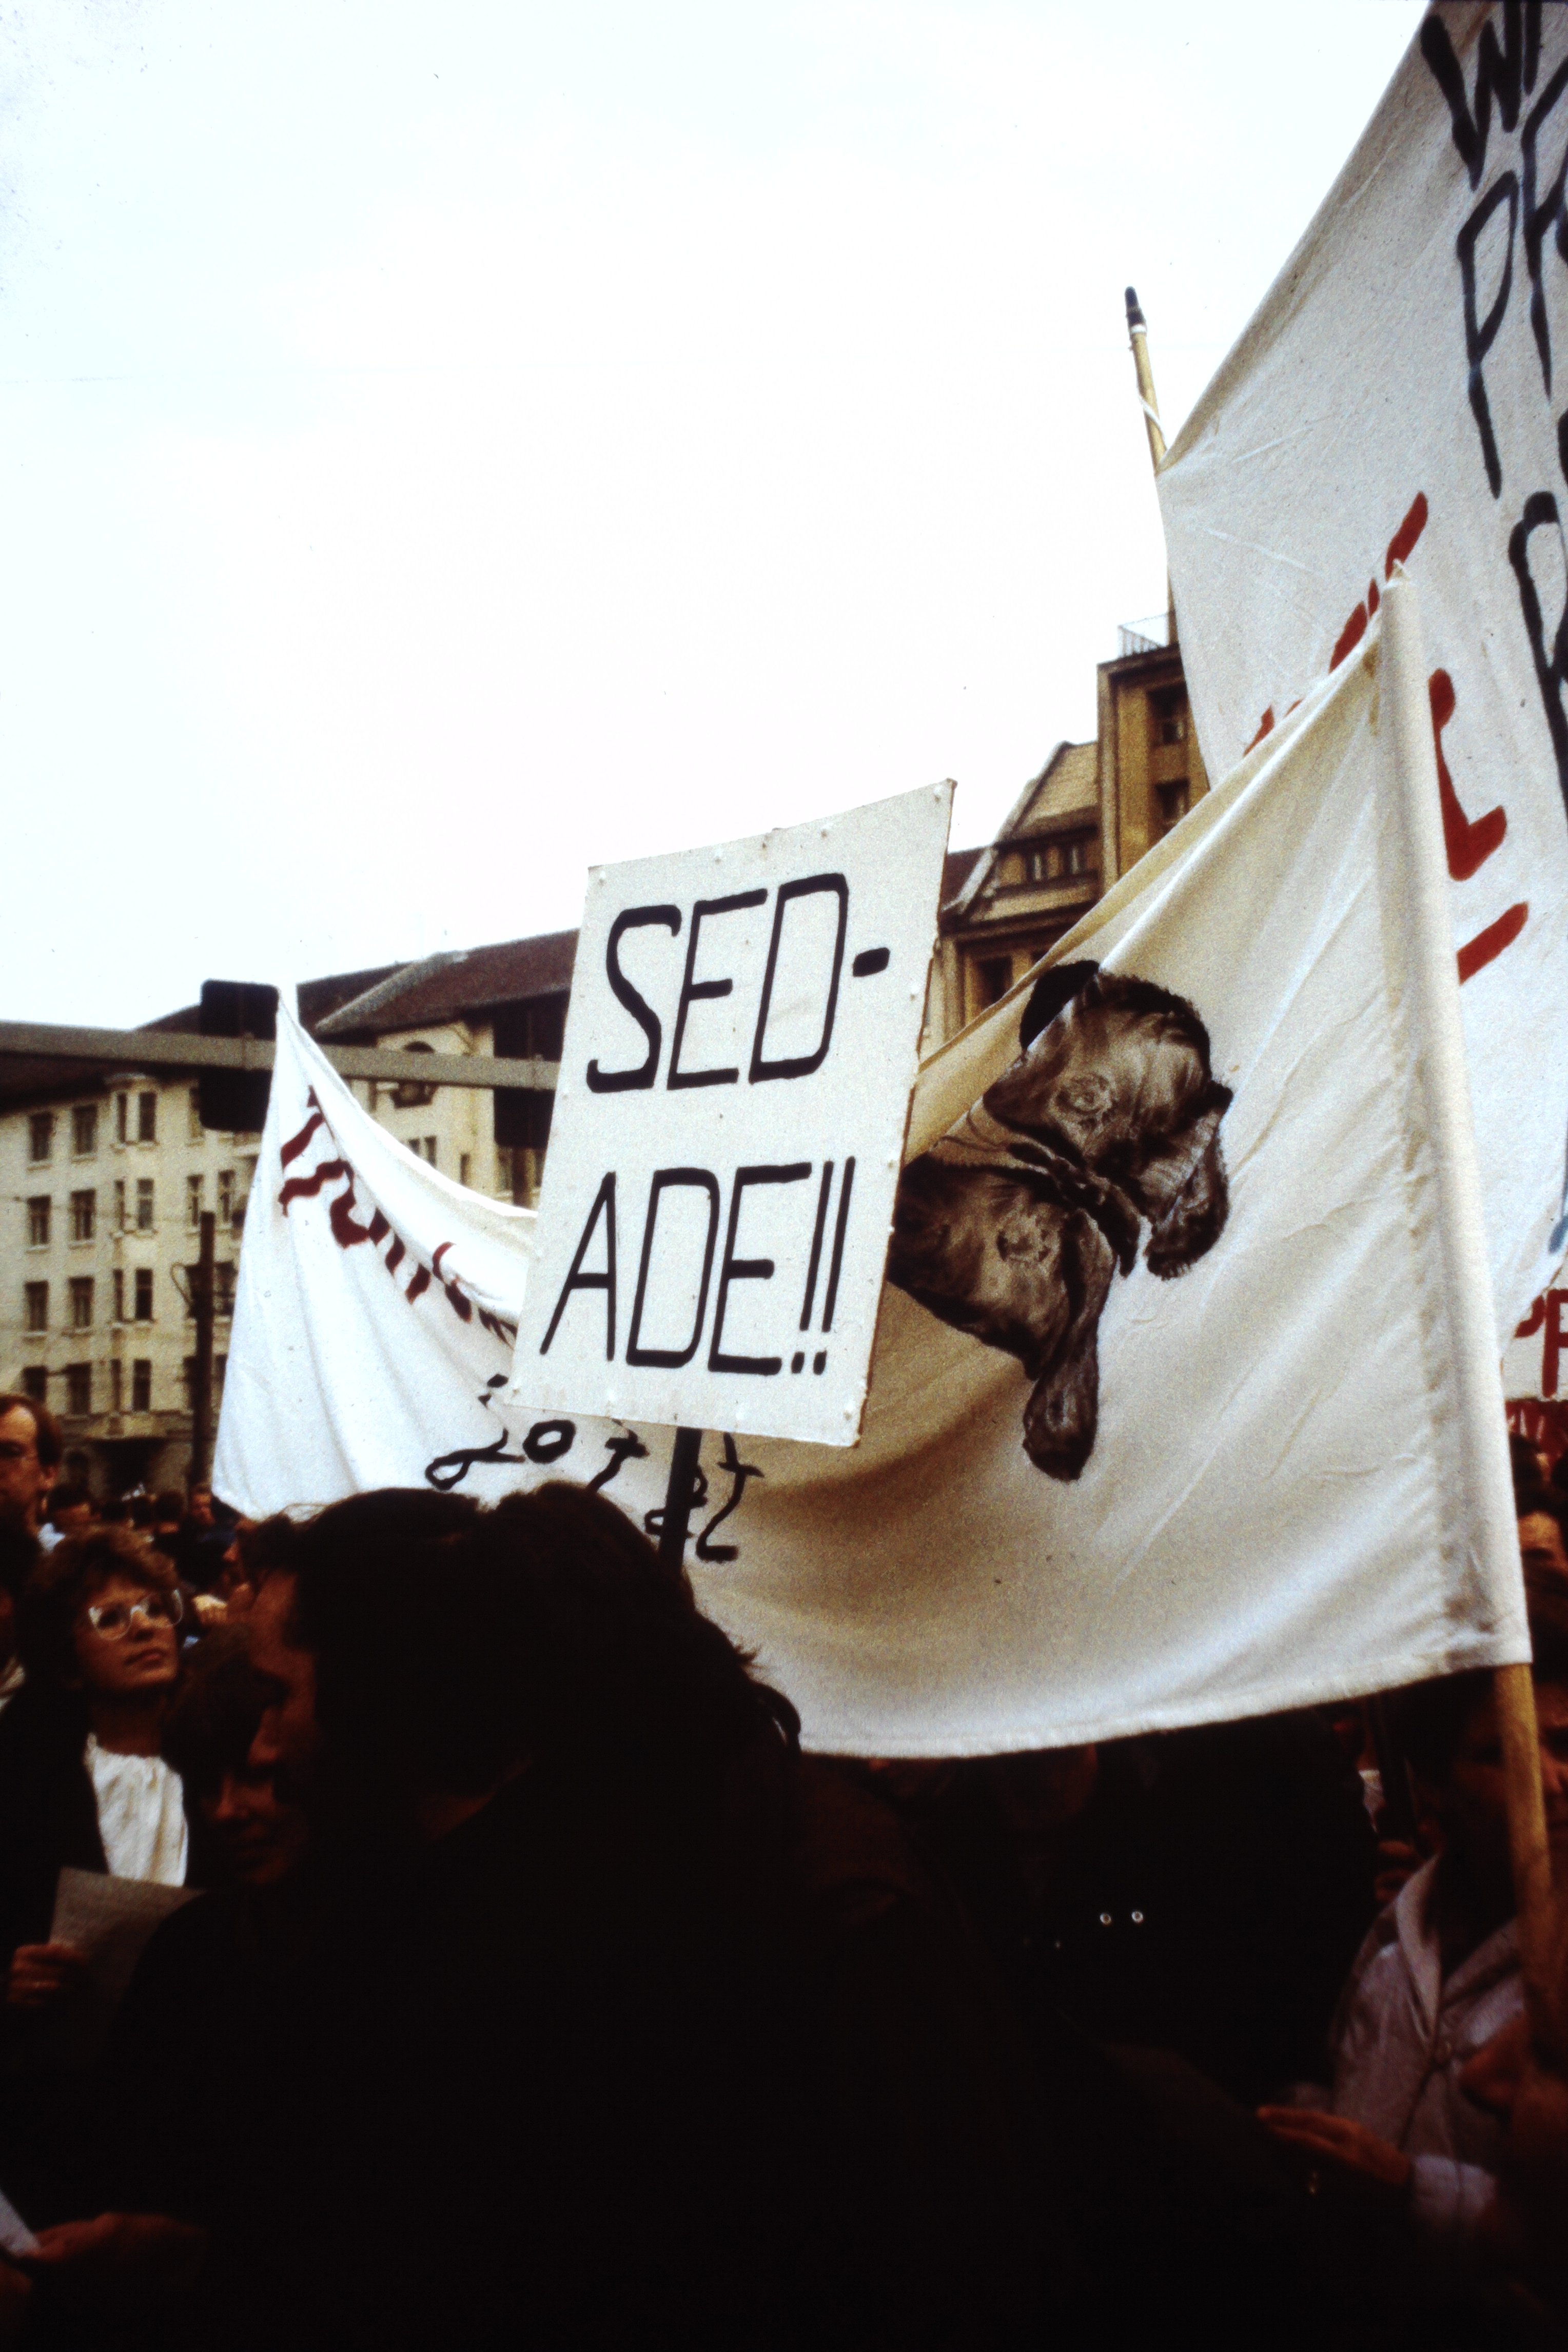 Großdemonstration in Ost-Berlin am 04. November 1989: Plakat mit der Aufschrift: "SED - ADE!!" (DDR Geschichtsmuseum im Dokumentationszentrum Perleberg CC BY-SA)